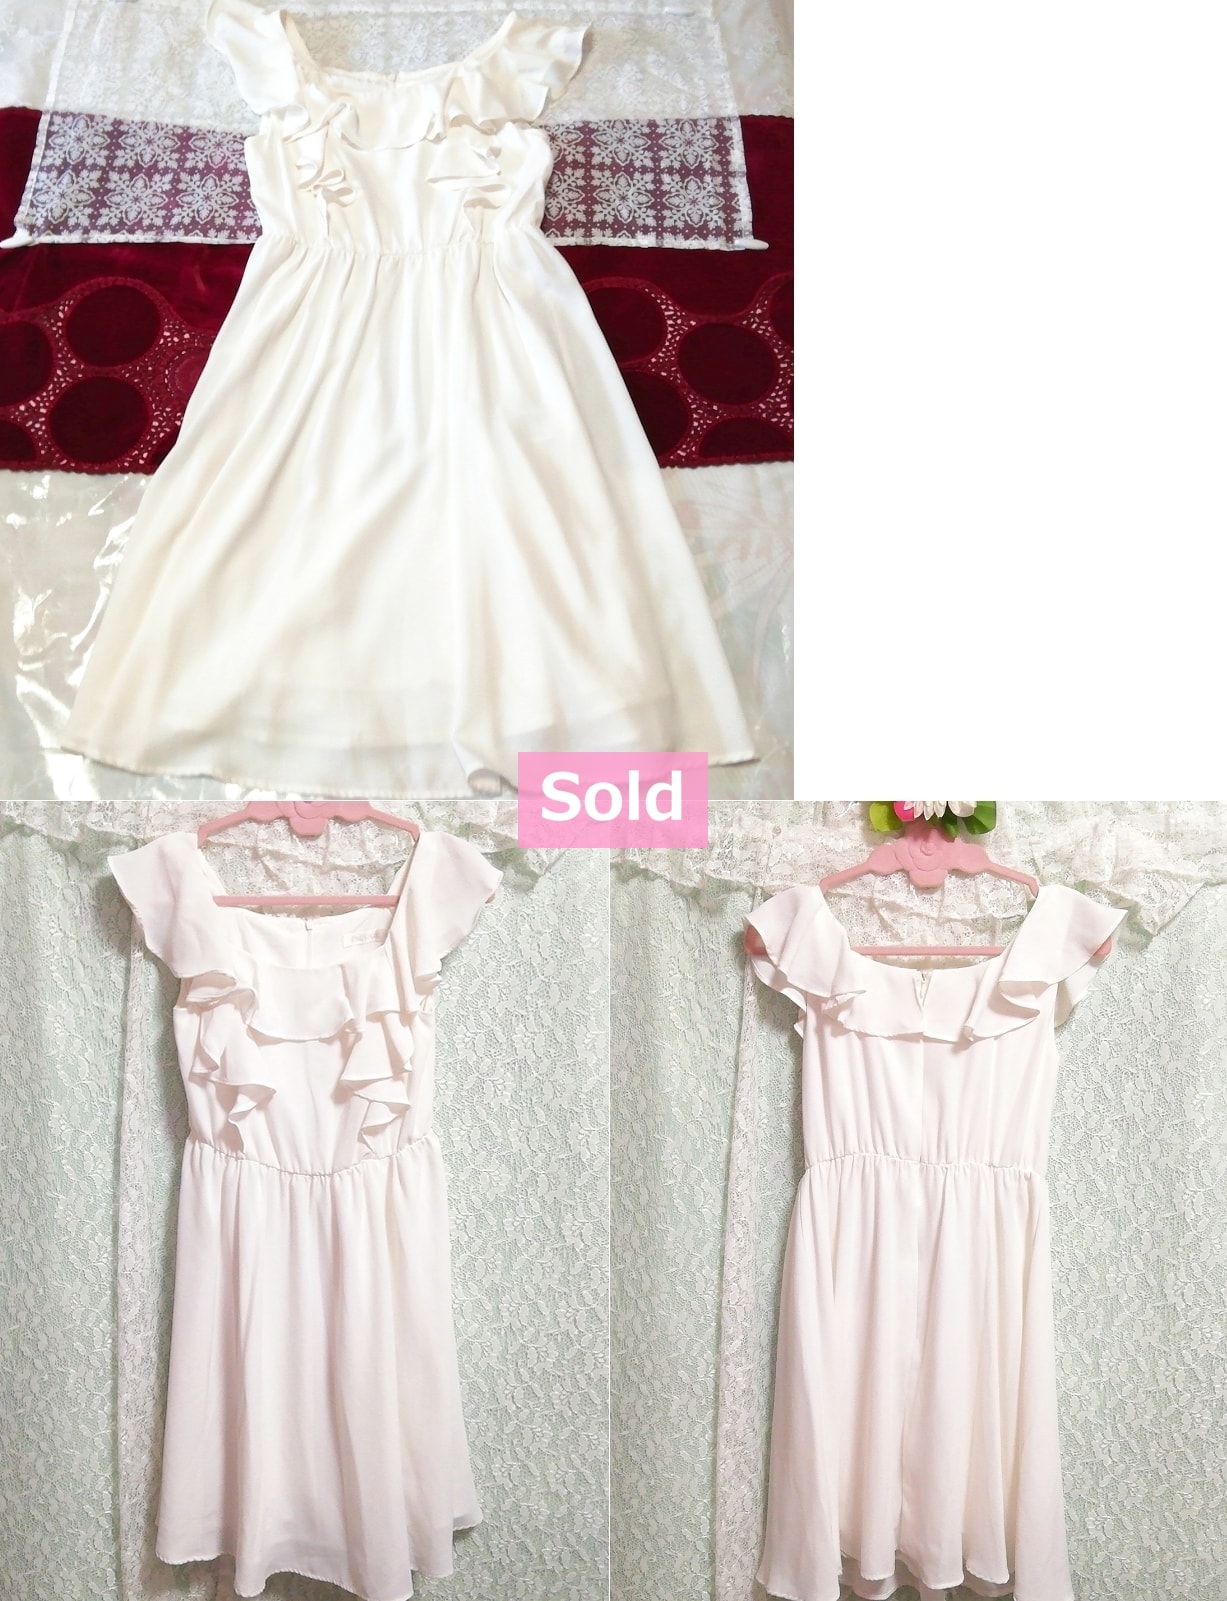 White flared chiffon sleeveless tunic negligee nightgown nightwear dress, tunic, sleeveless, sleeveless, m size